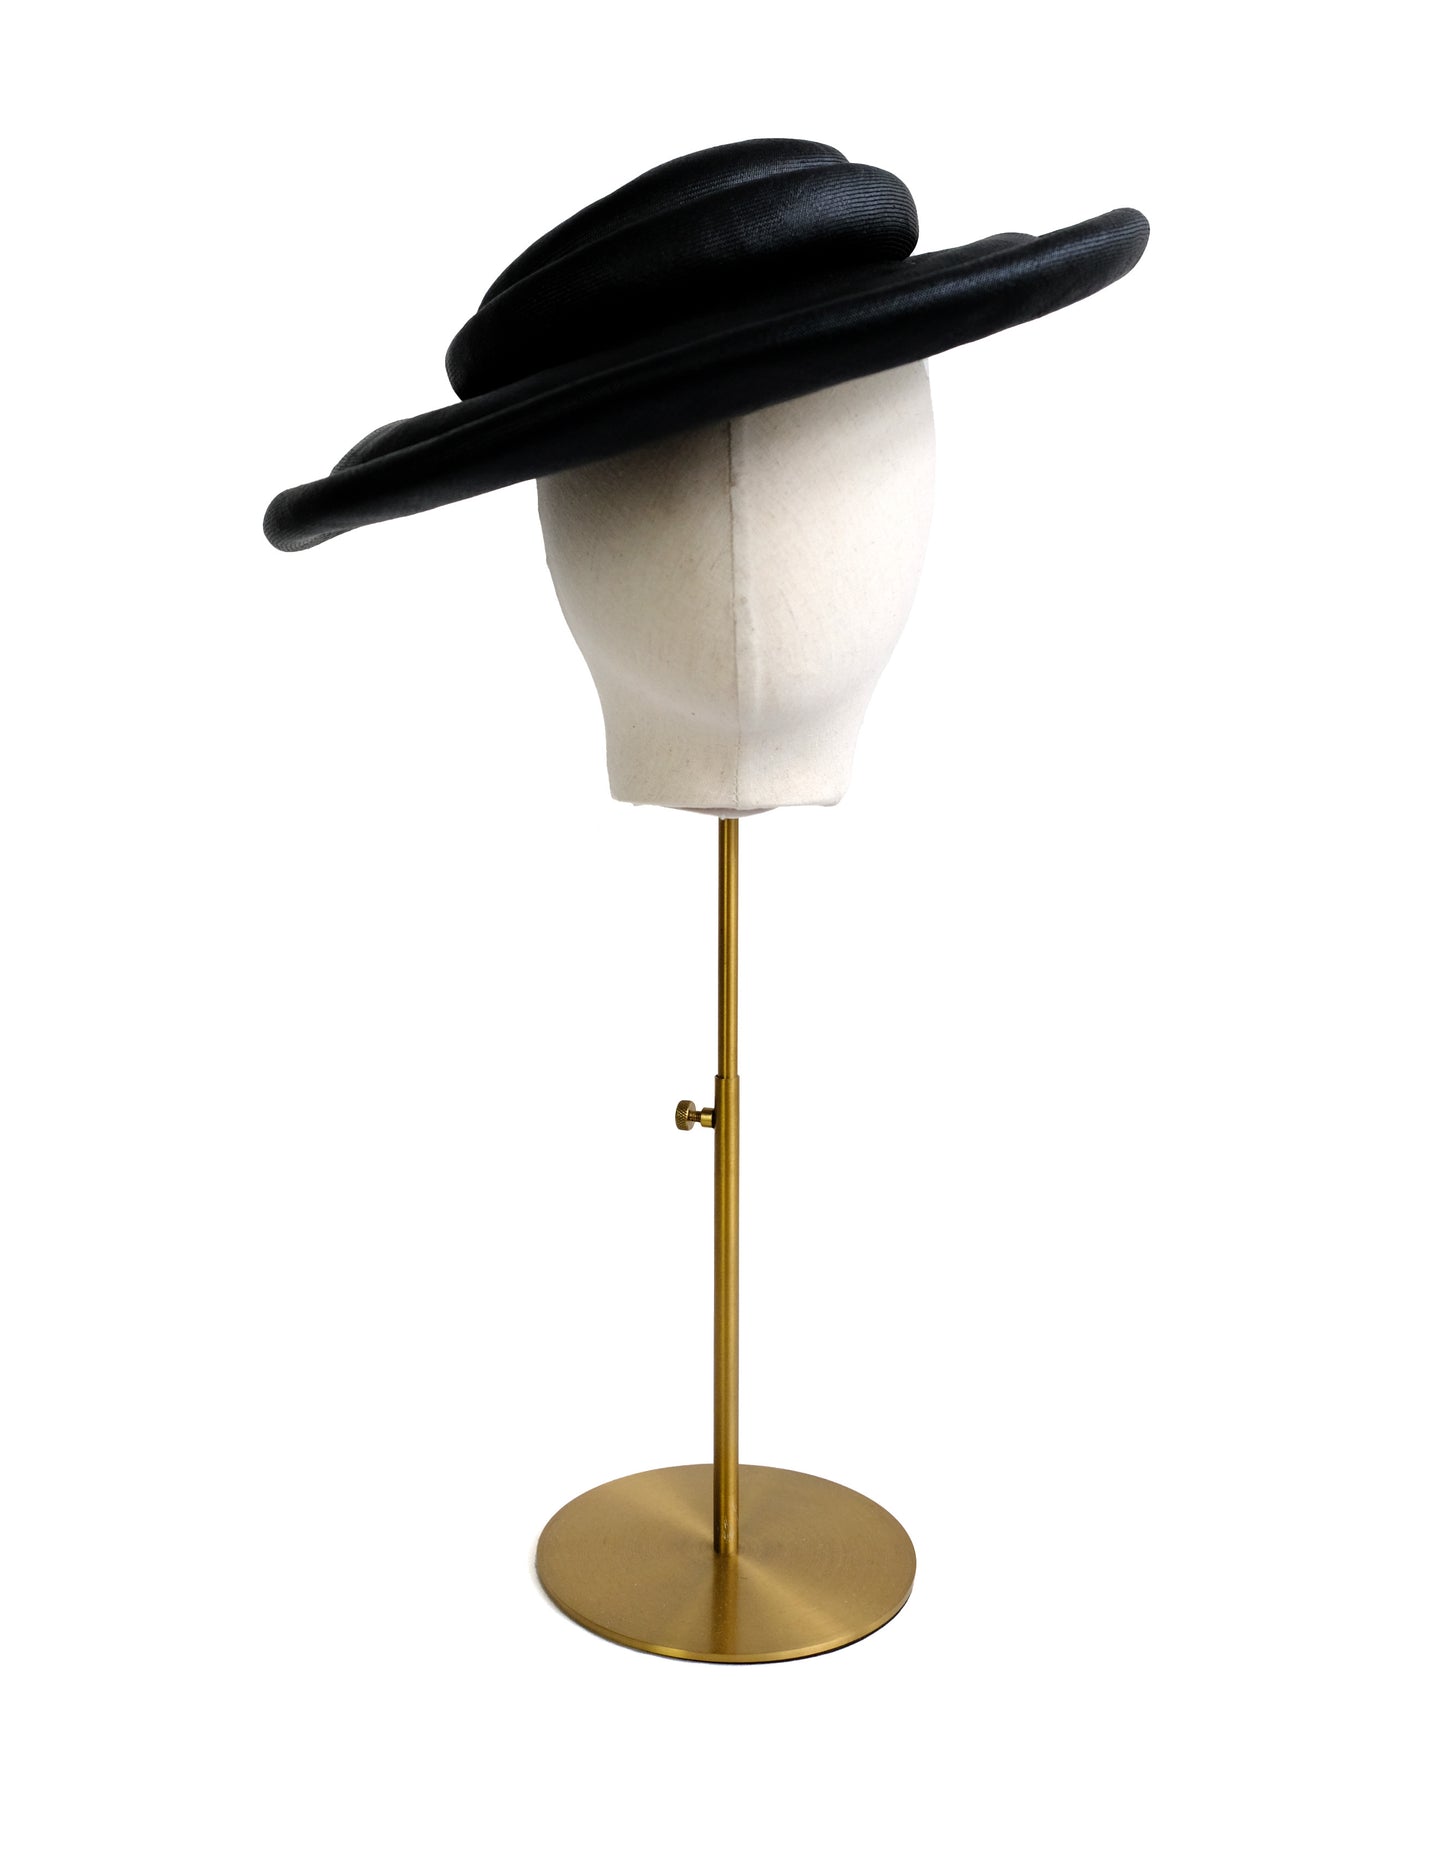 Otto Lucas  1960s Vintage Hat in Fine Black Straw